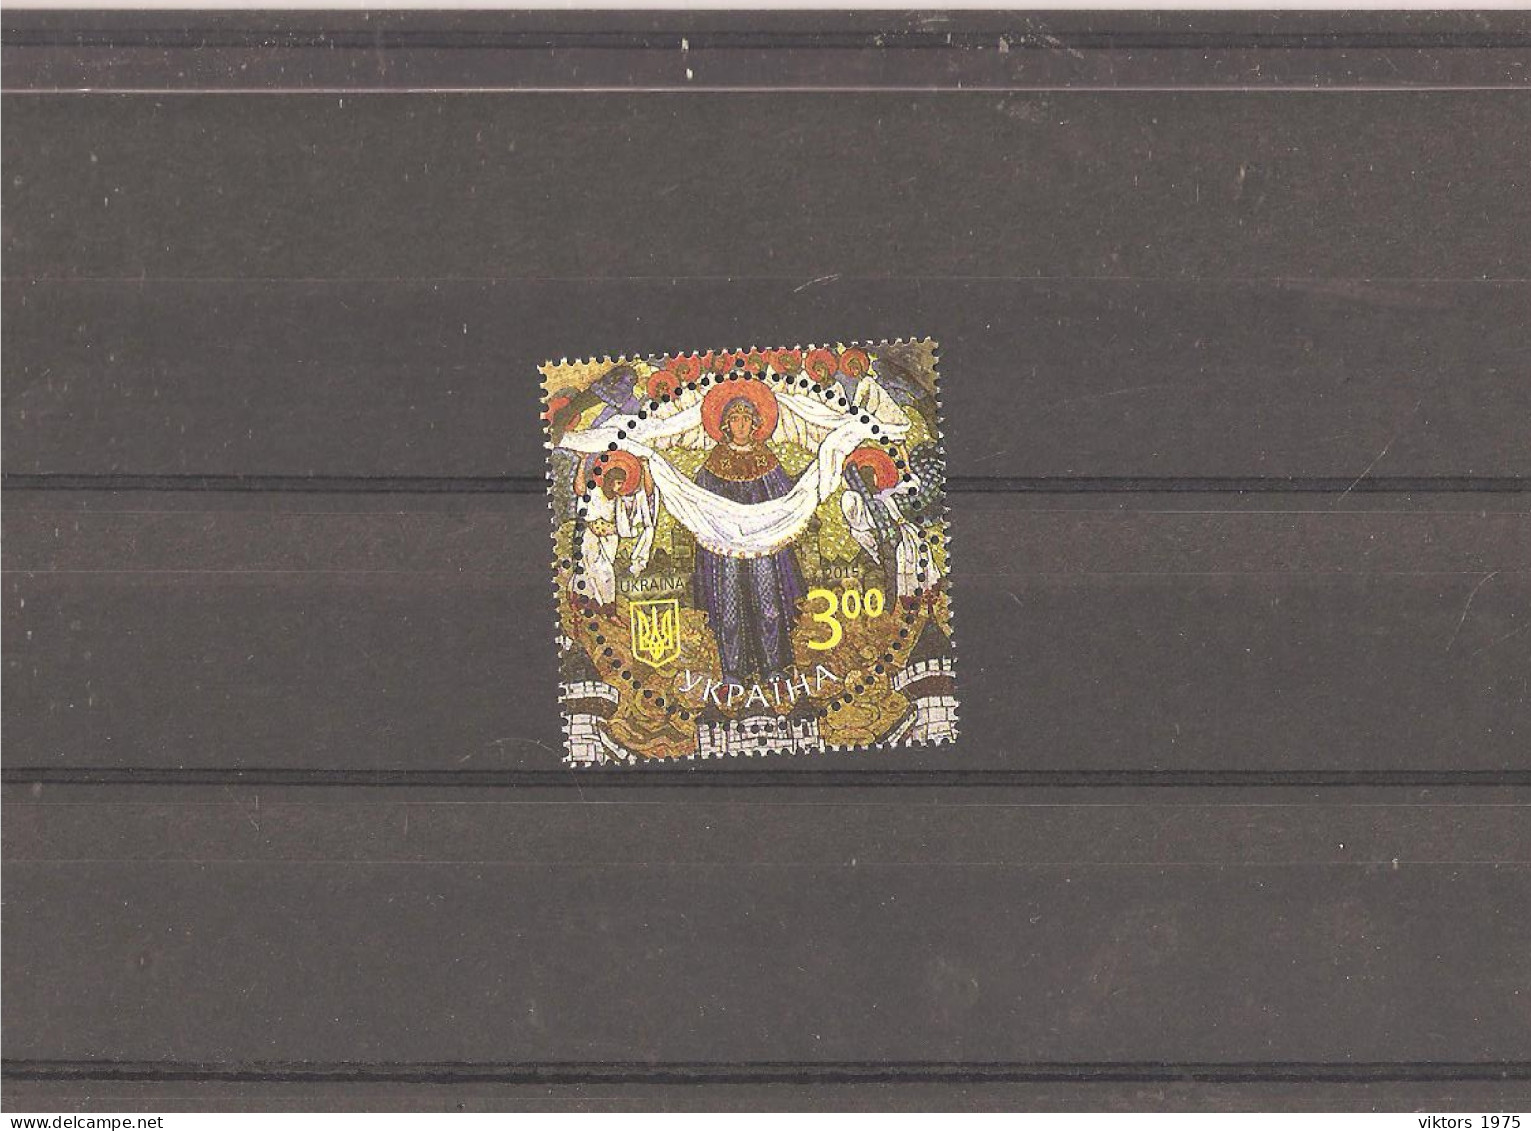 MNH Stamp Nr.1508 In MICHEL Catalog - Ukraine